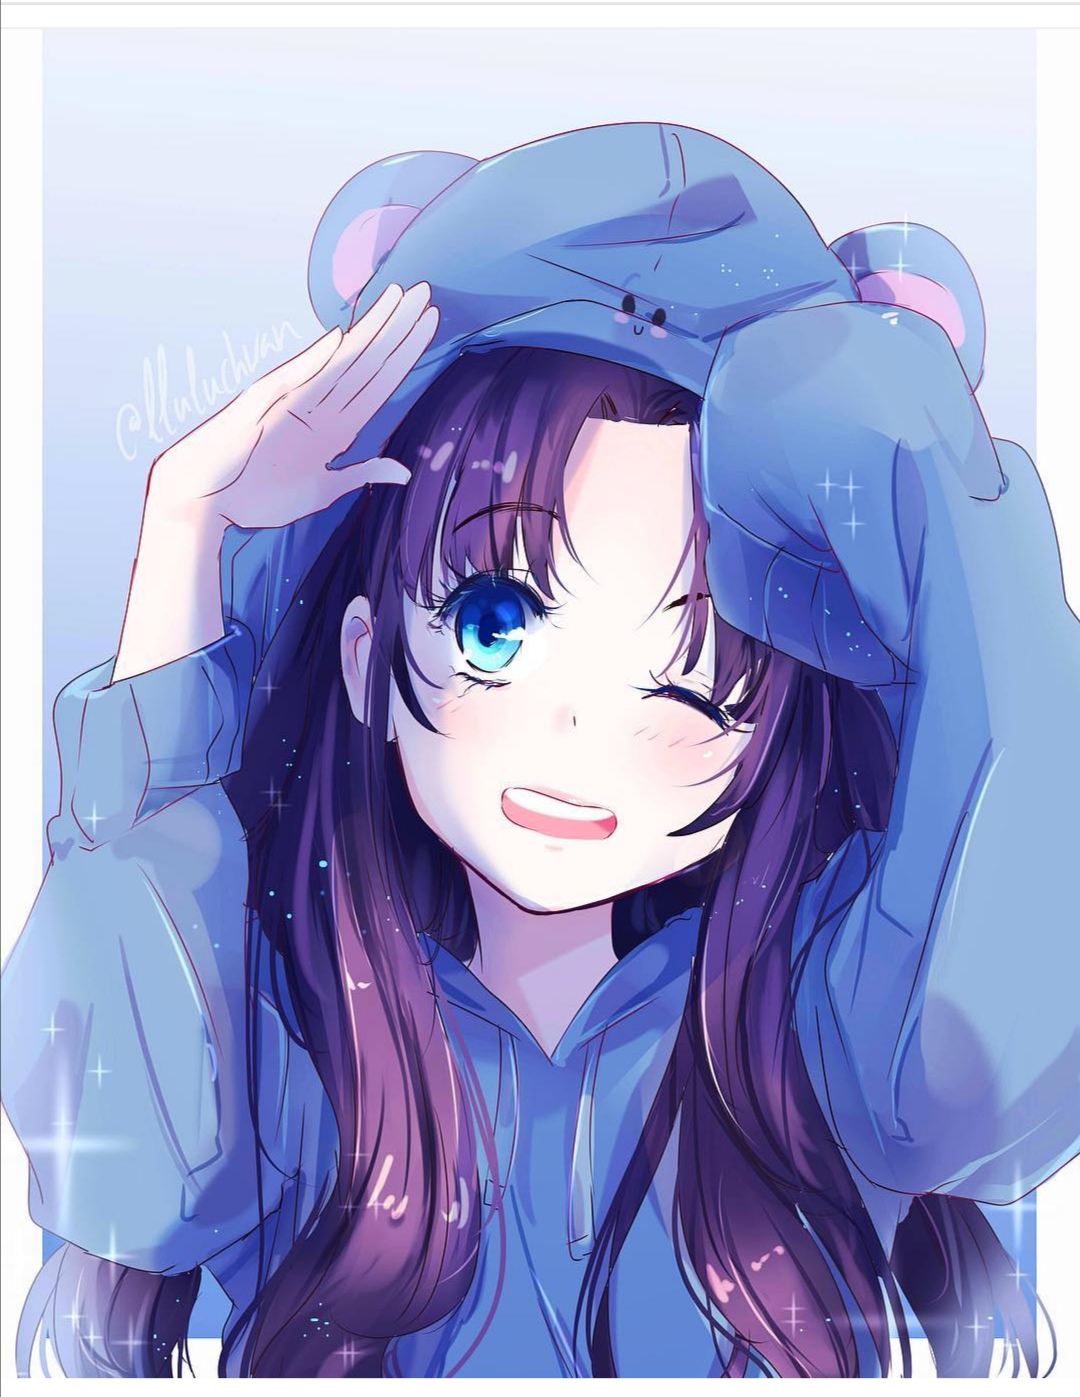 Good Morning Anime Girl - HD Wallpaper 